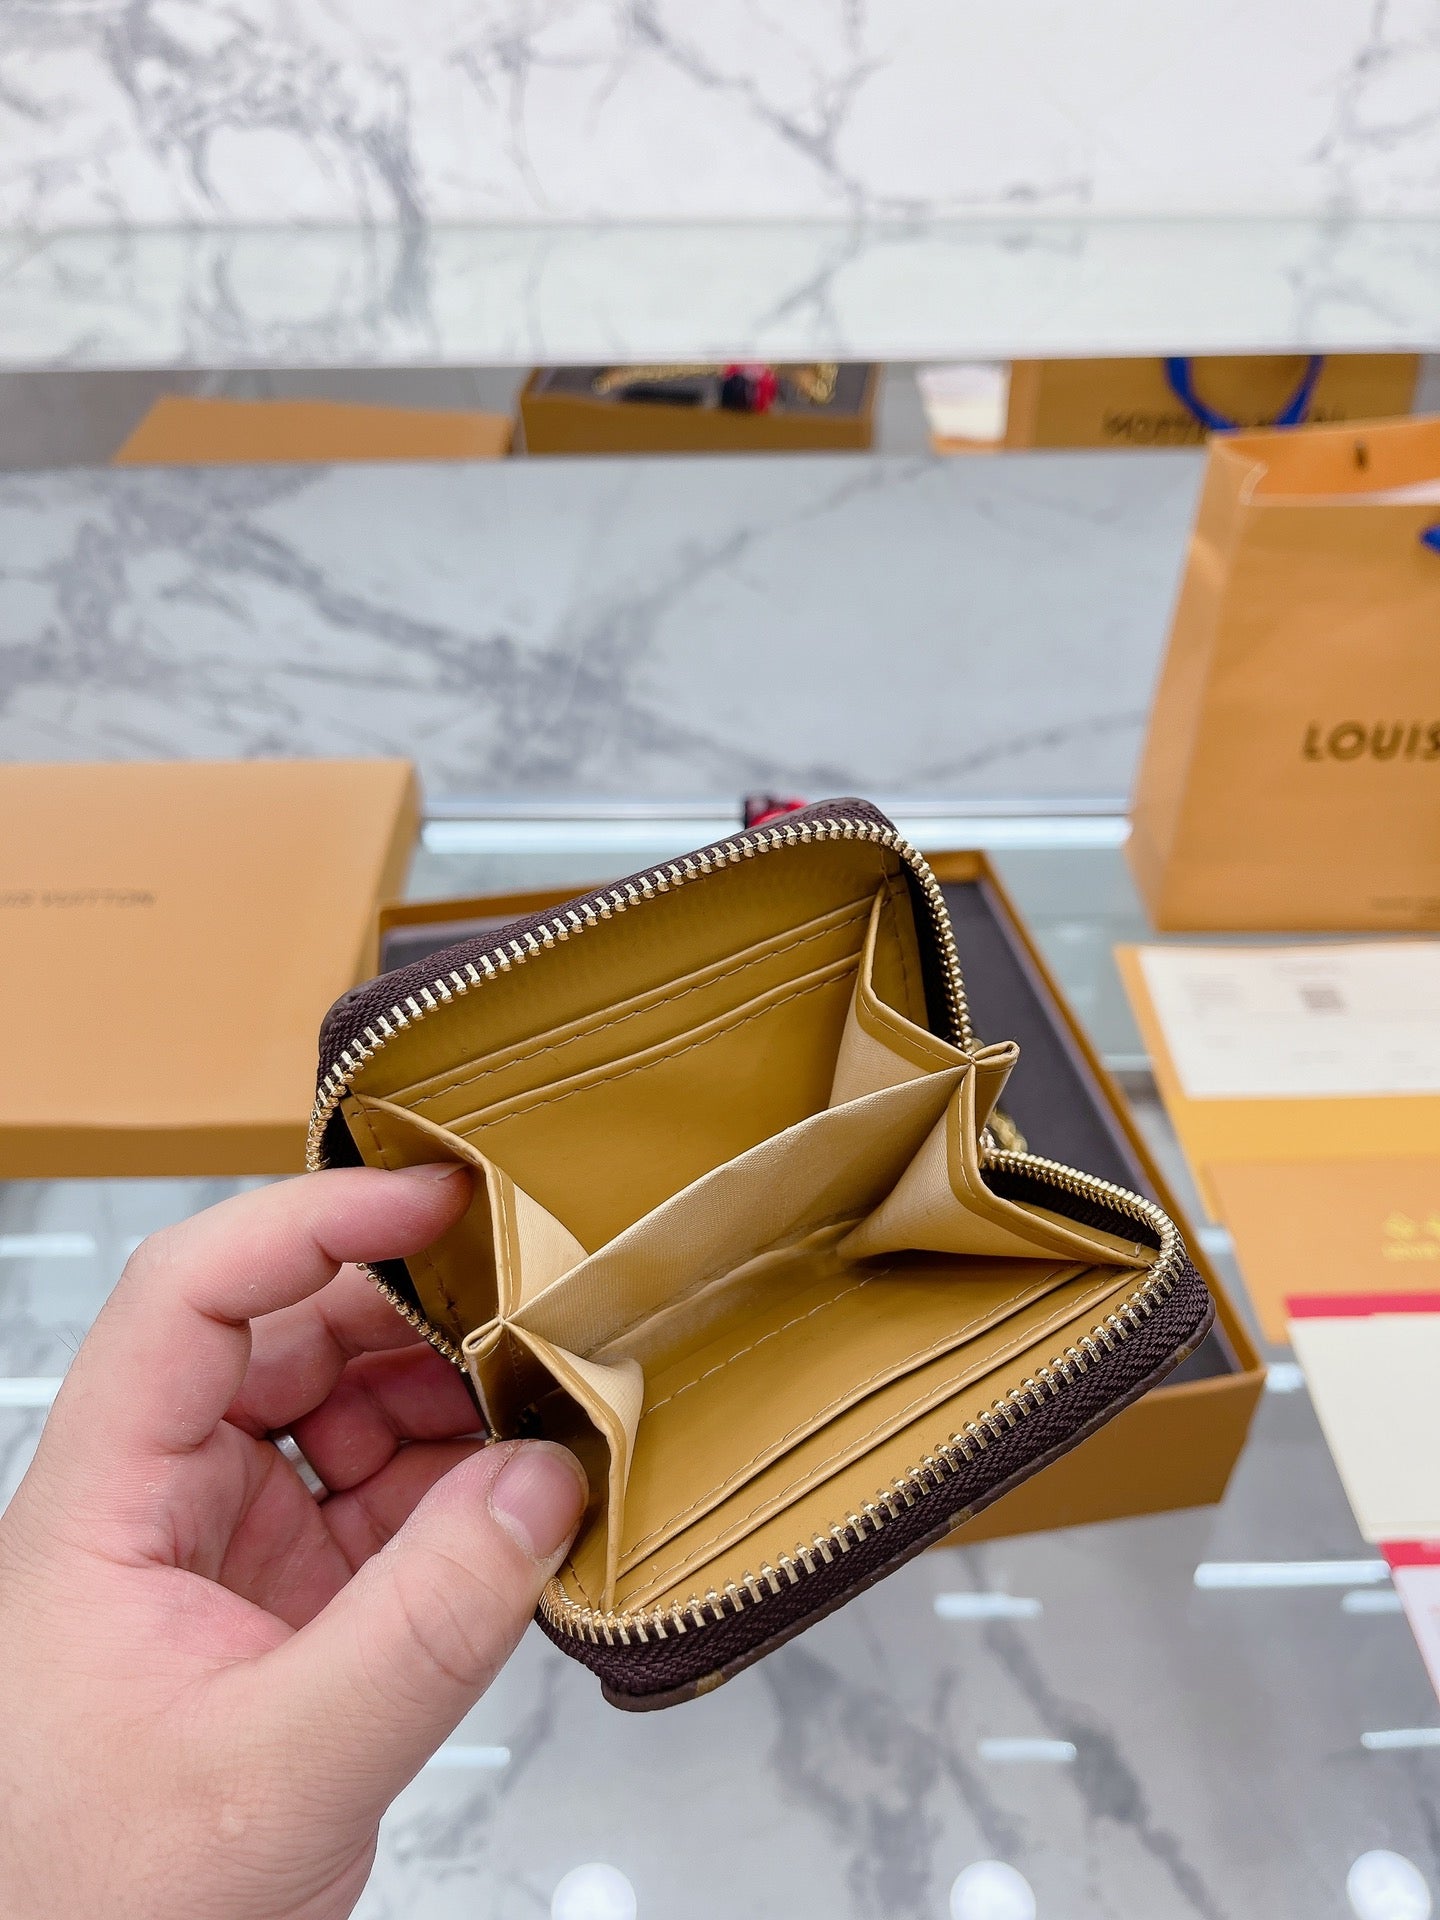 Louis Vuitton sac plat pm mng thn 2022 #Chip with fullset no ppbag